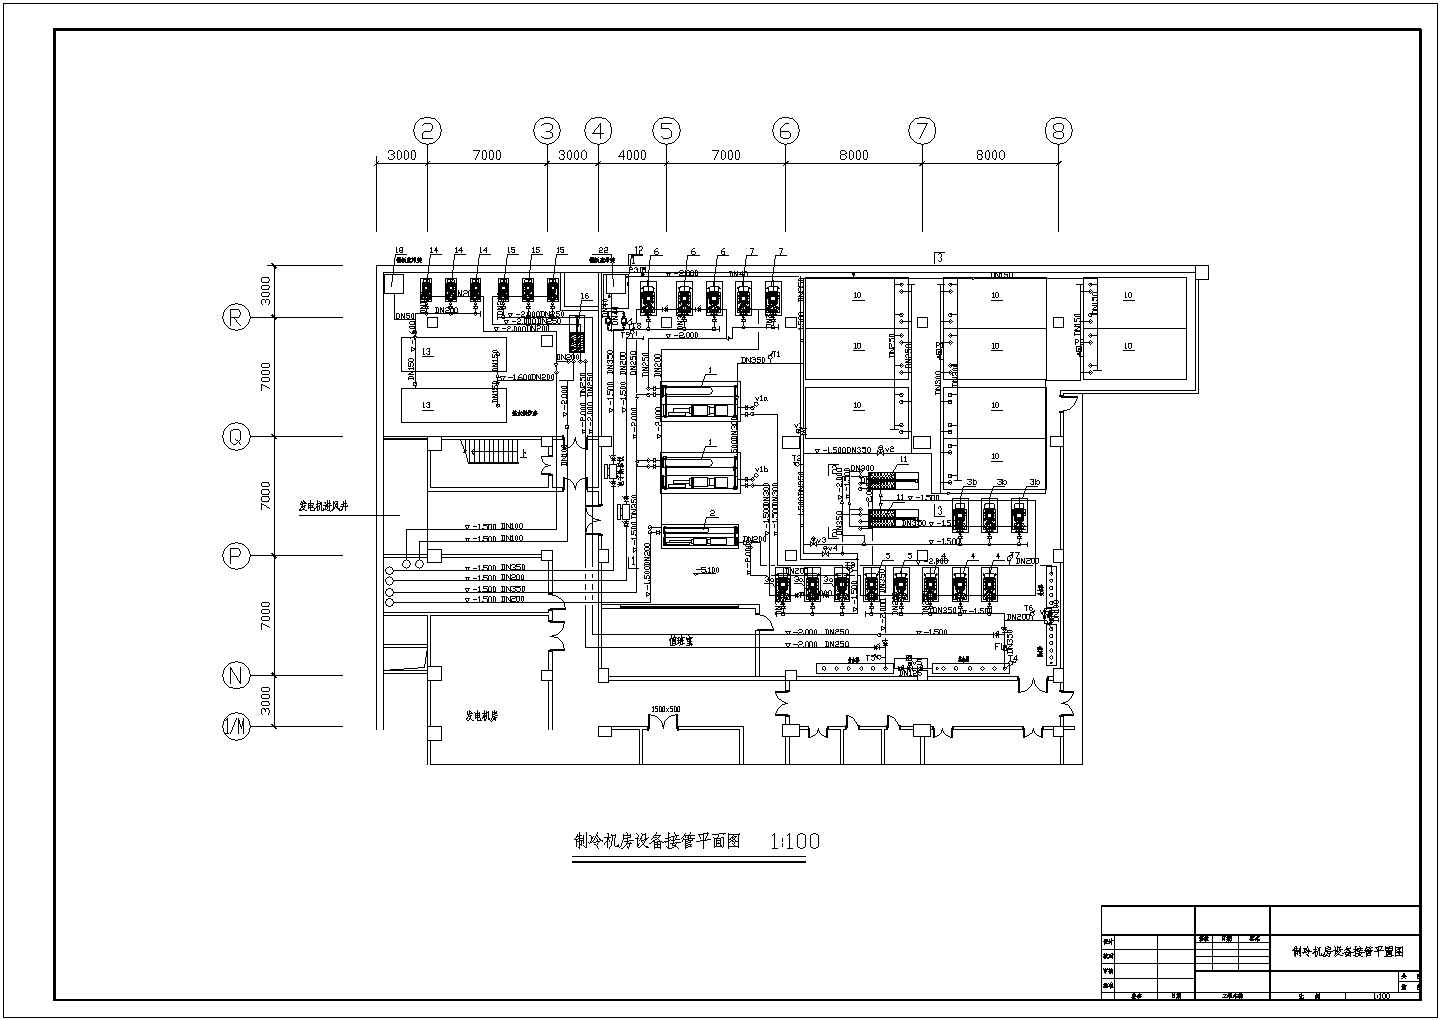 【南京】某空调机房全套cad设计施工图(含制冷机房设备基础平面图)